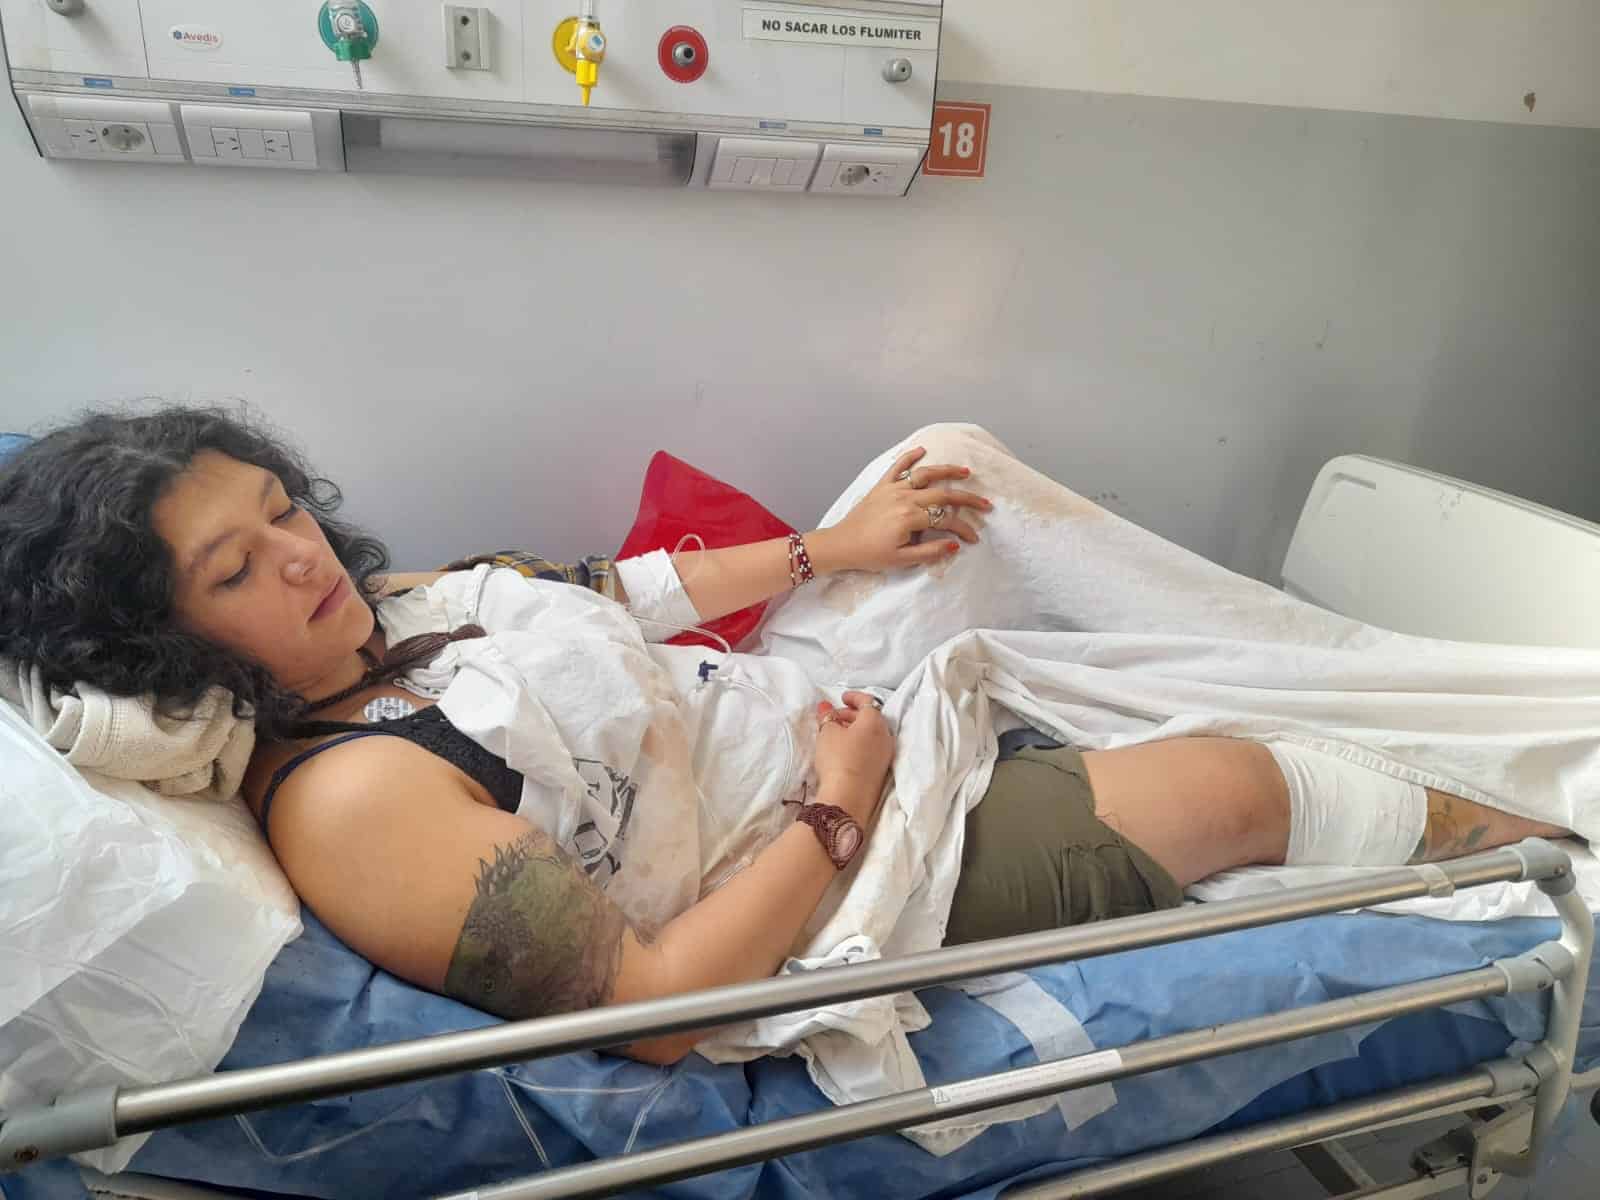 Duro relato de la joven embarazada atropellada ayer en Villa Ariza